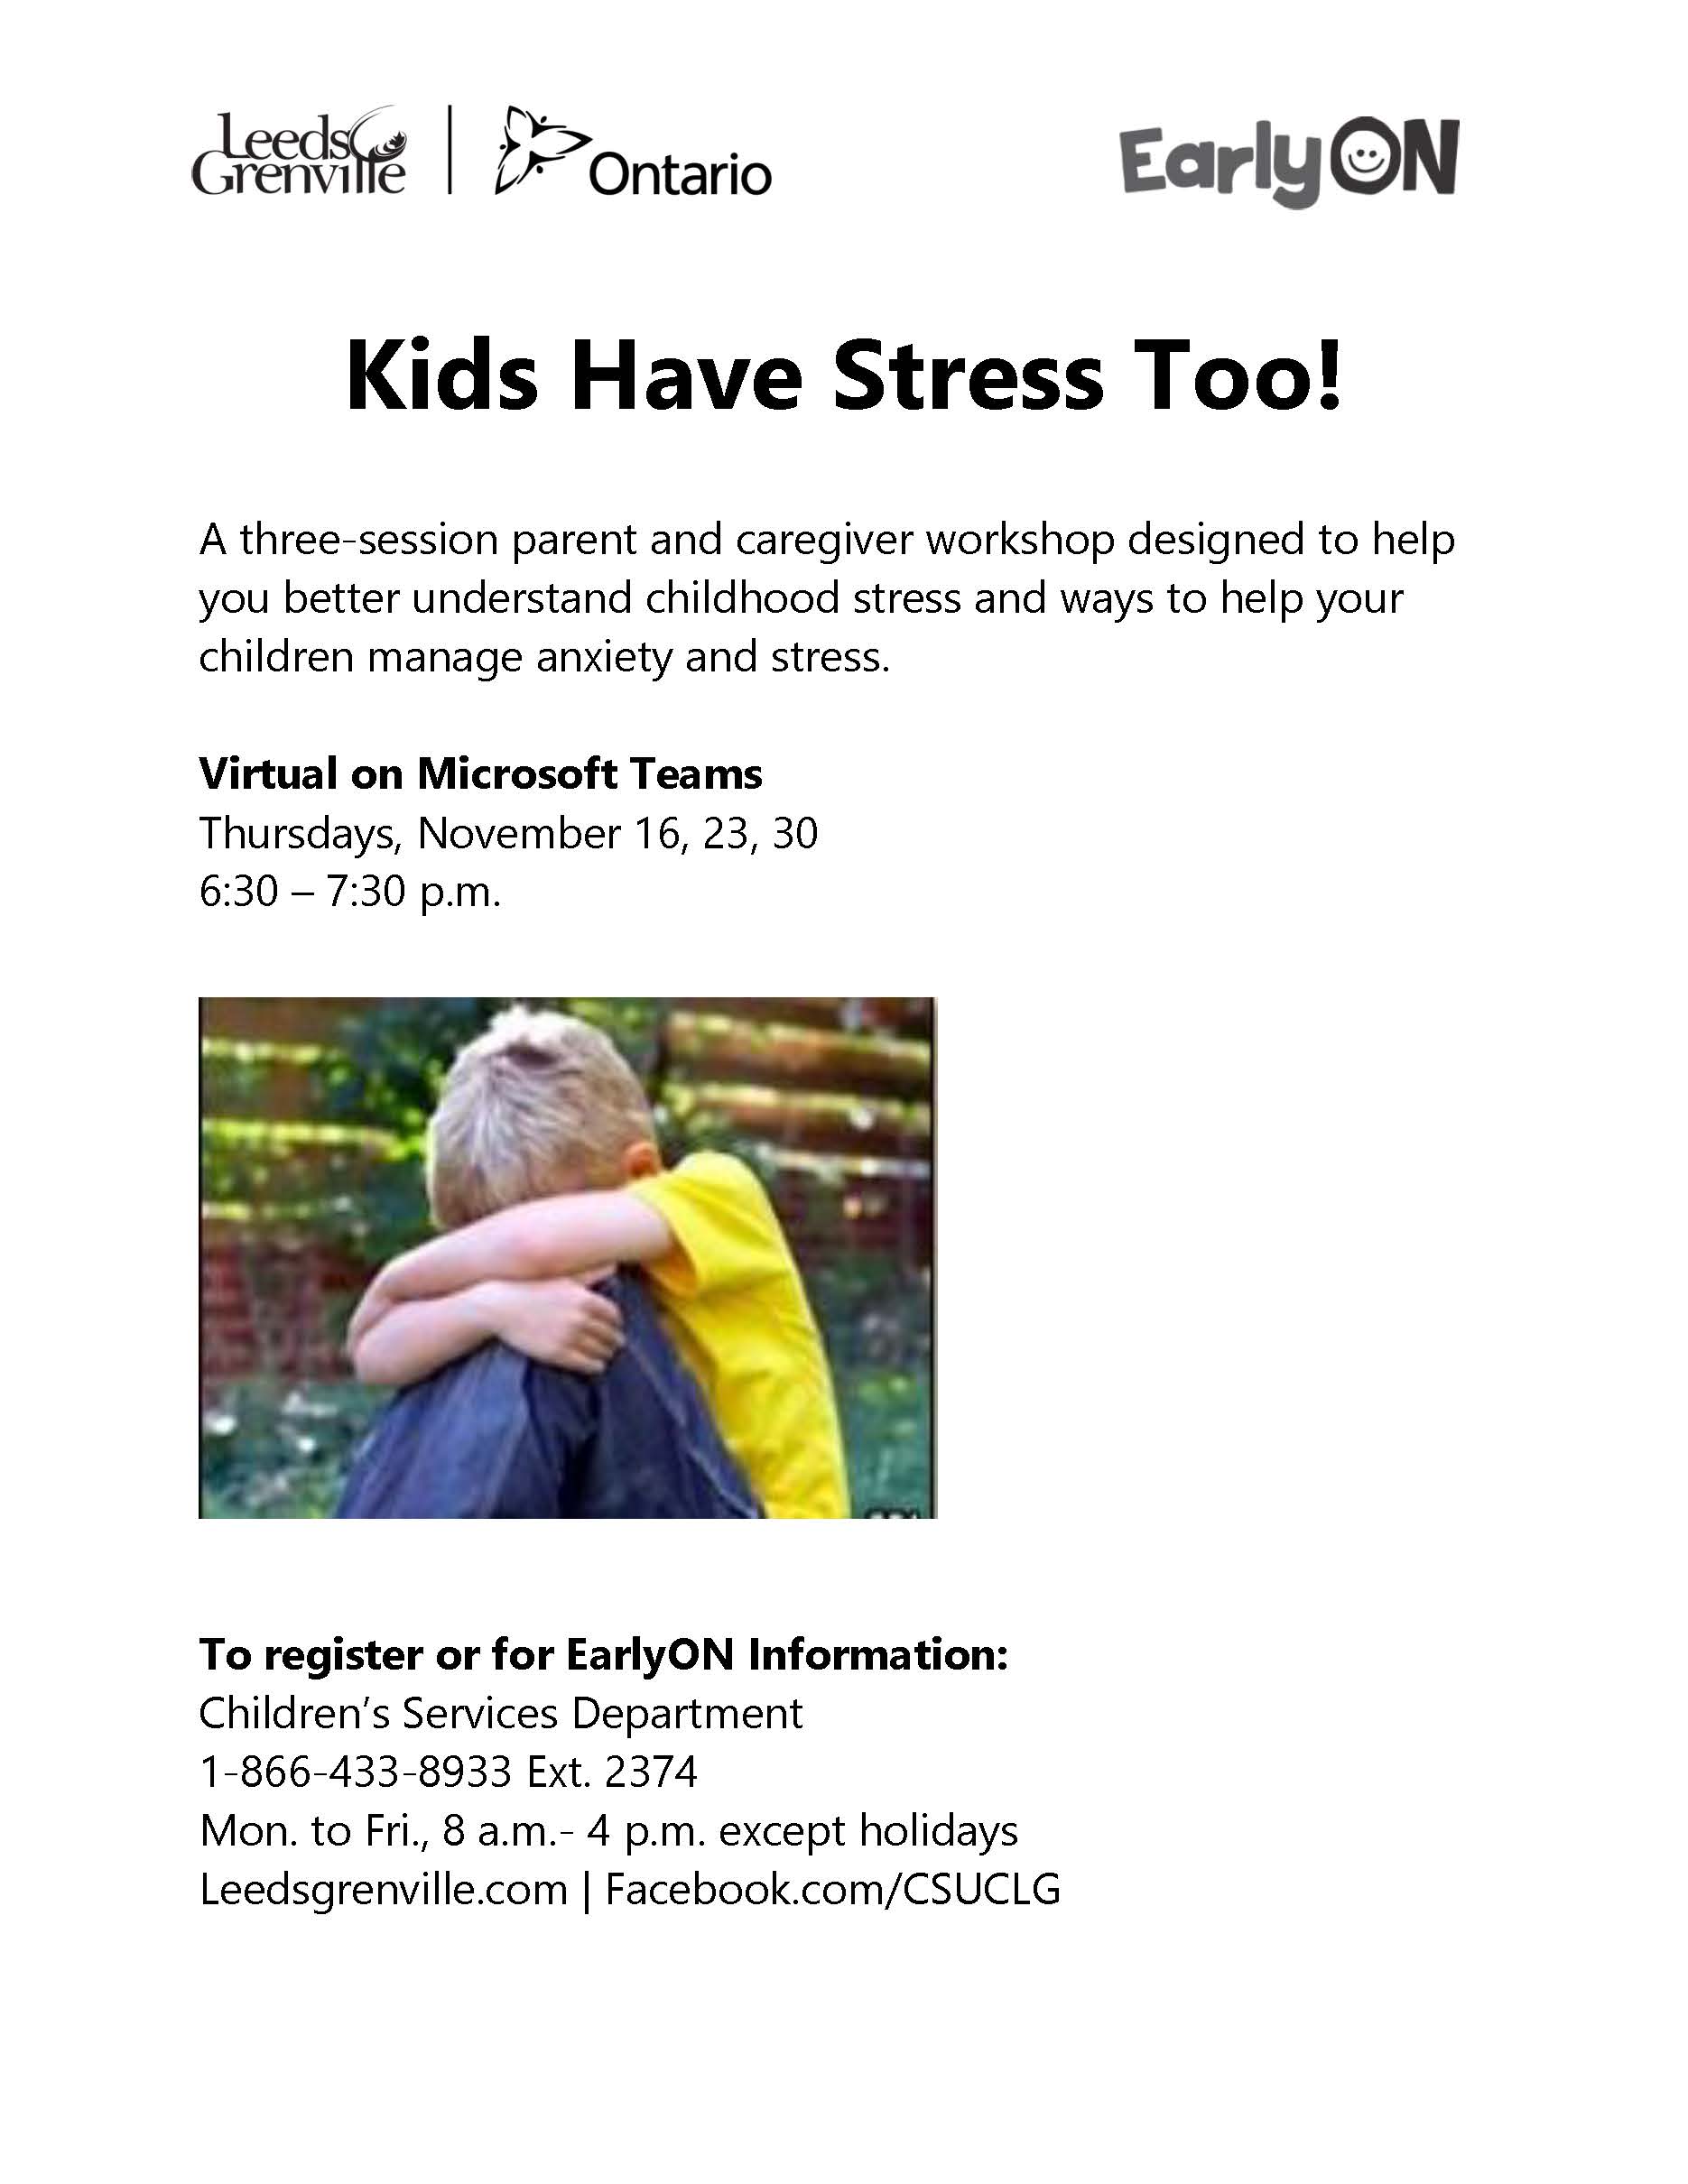 kids have stress too workshop poster